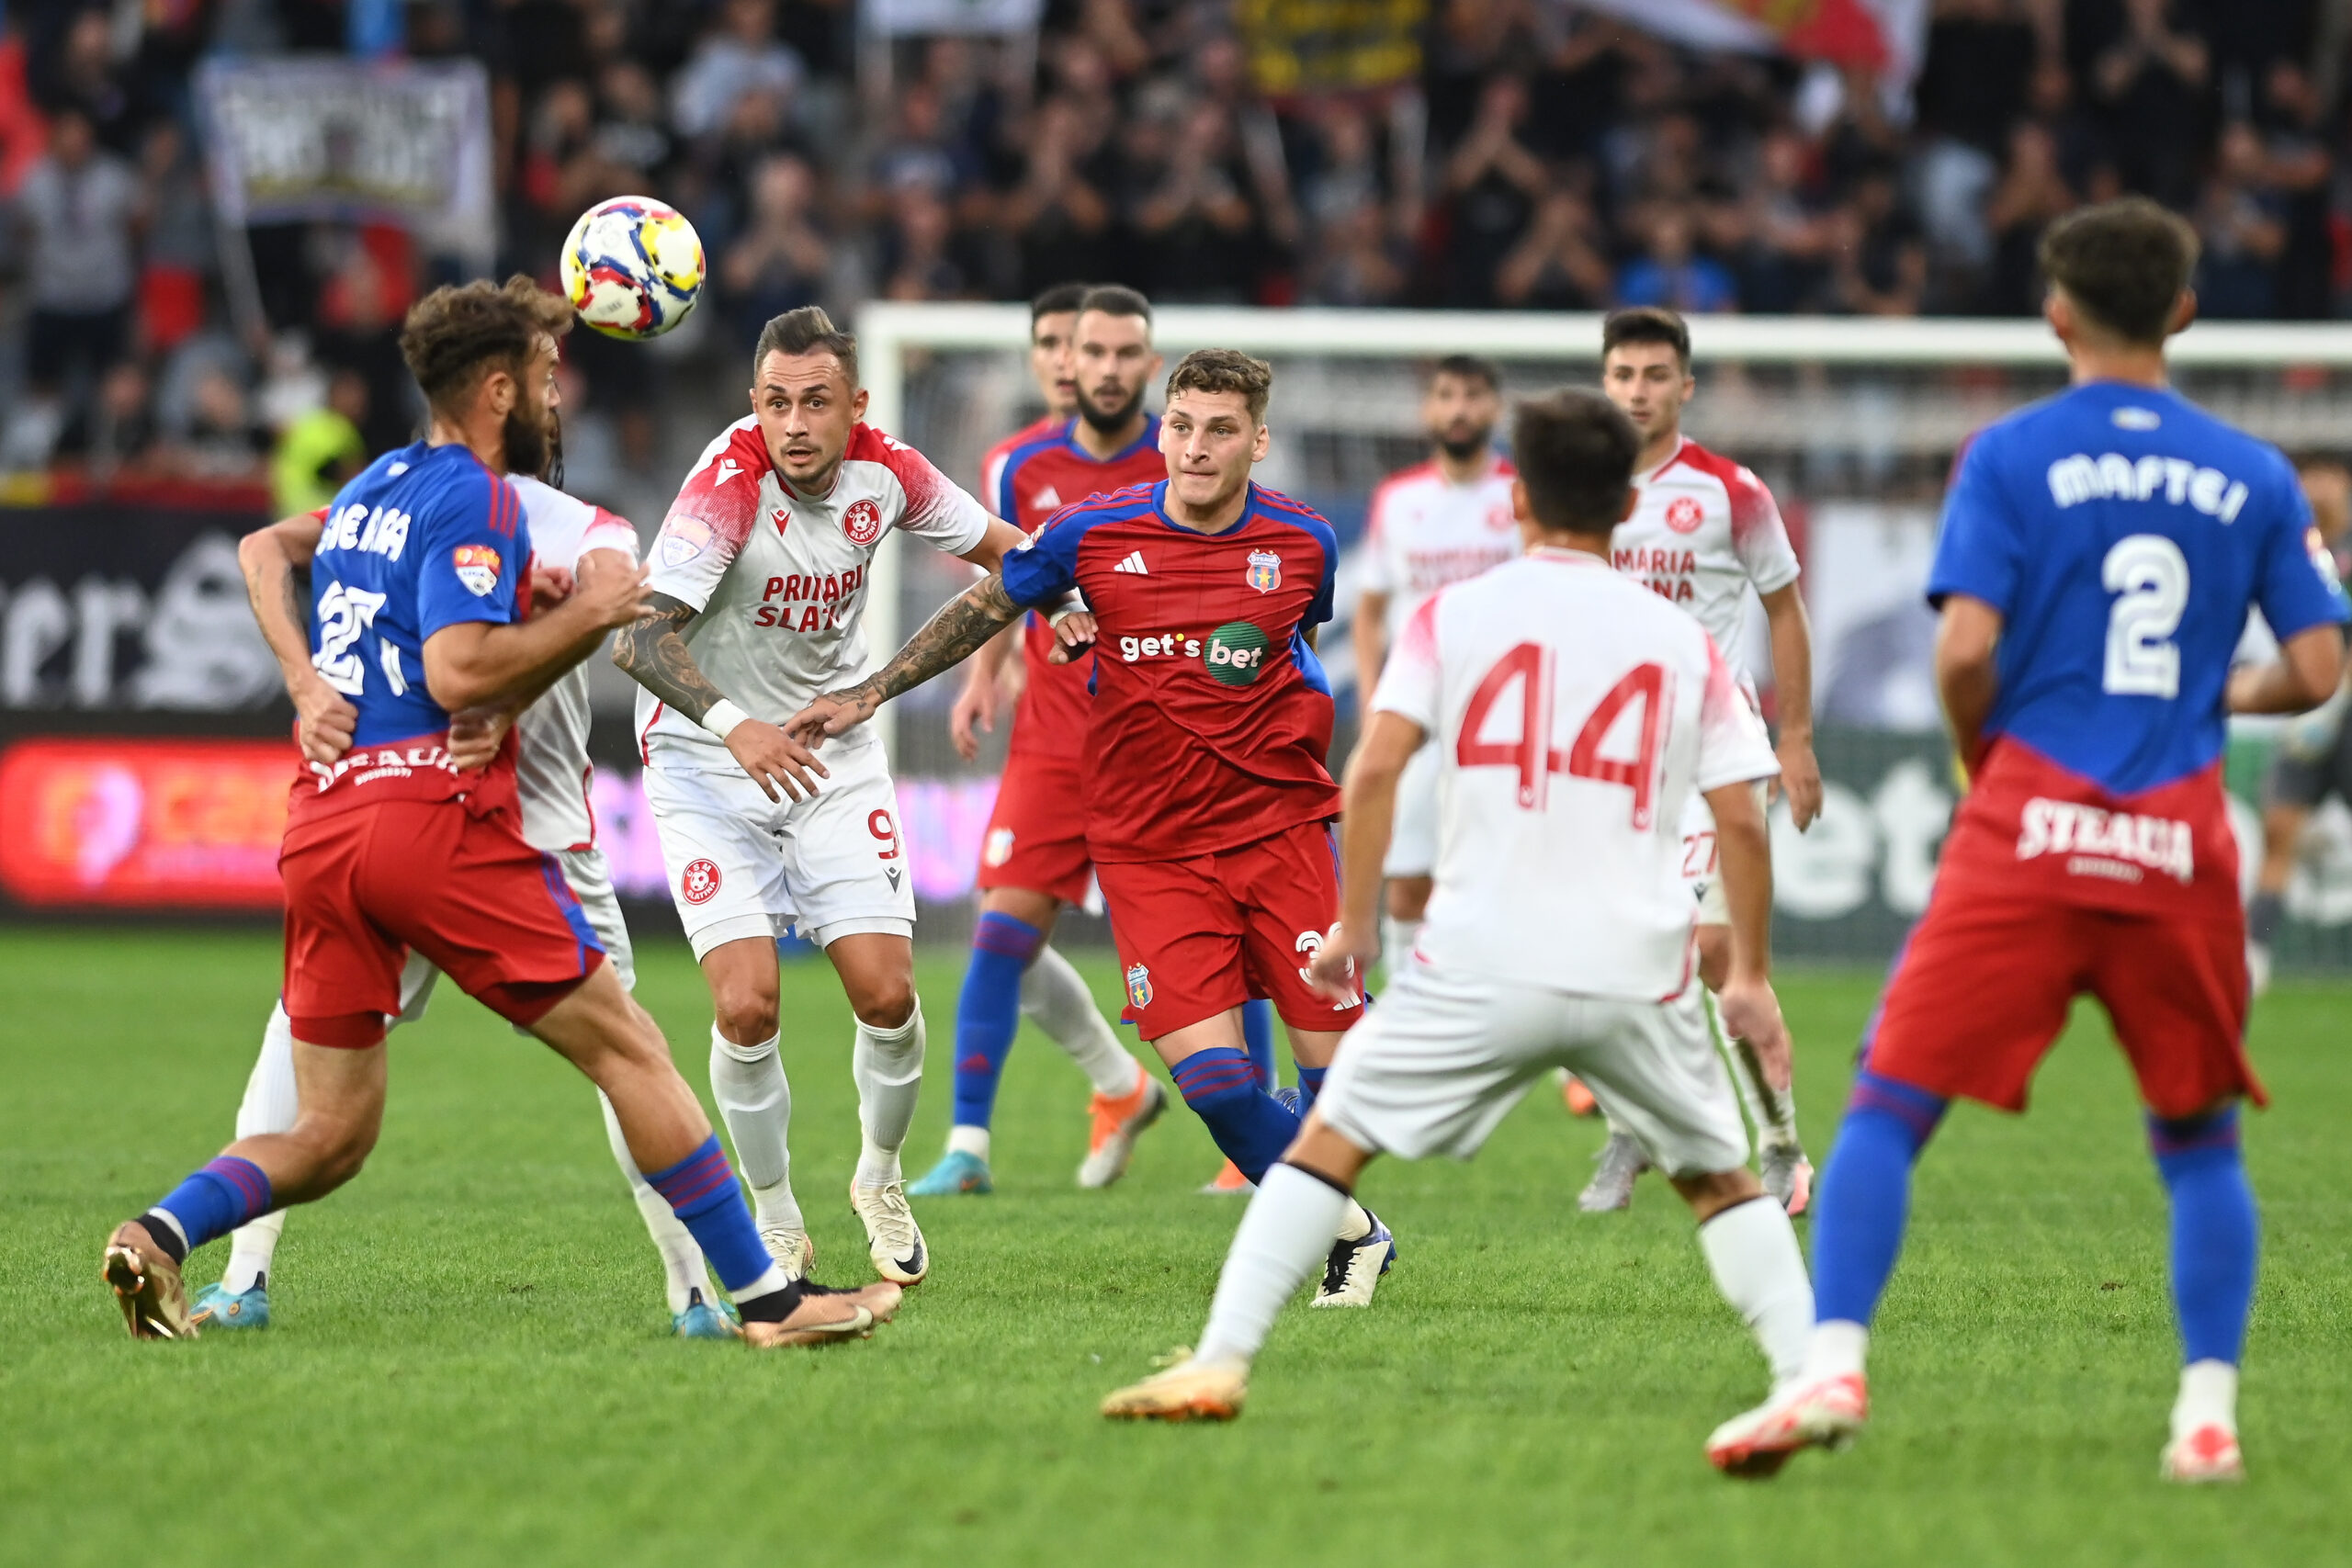 Steaua și Gloria Buzău au deschis ultima etapă din Liga 2 din 2022